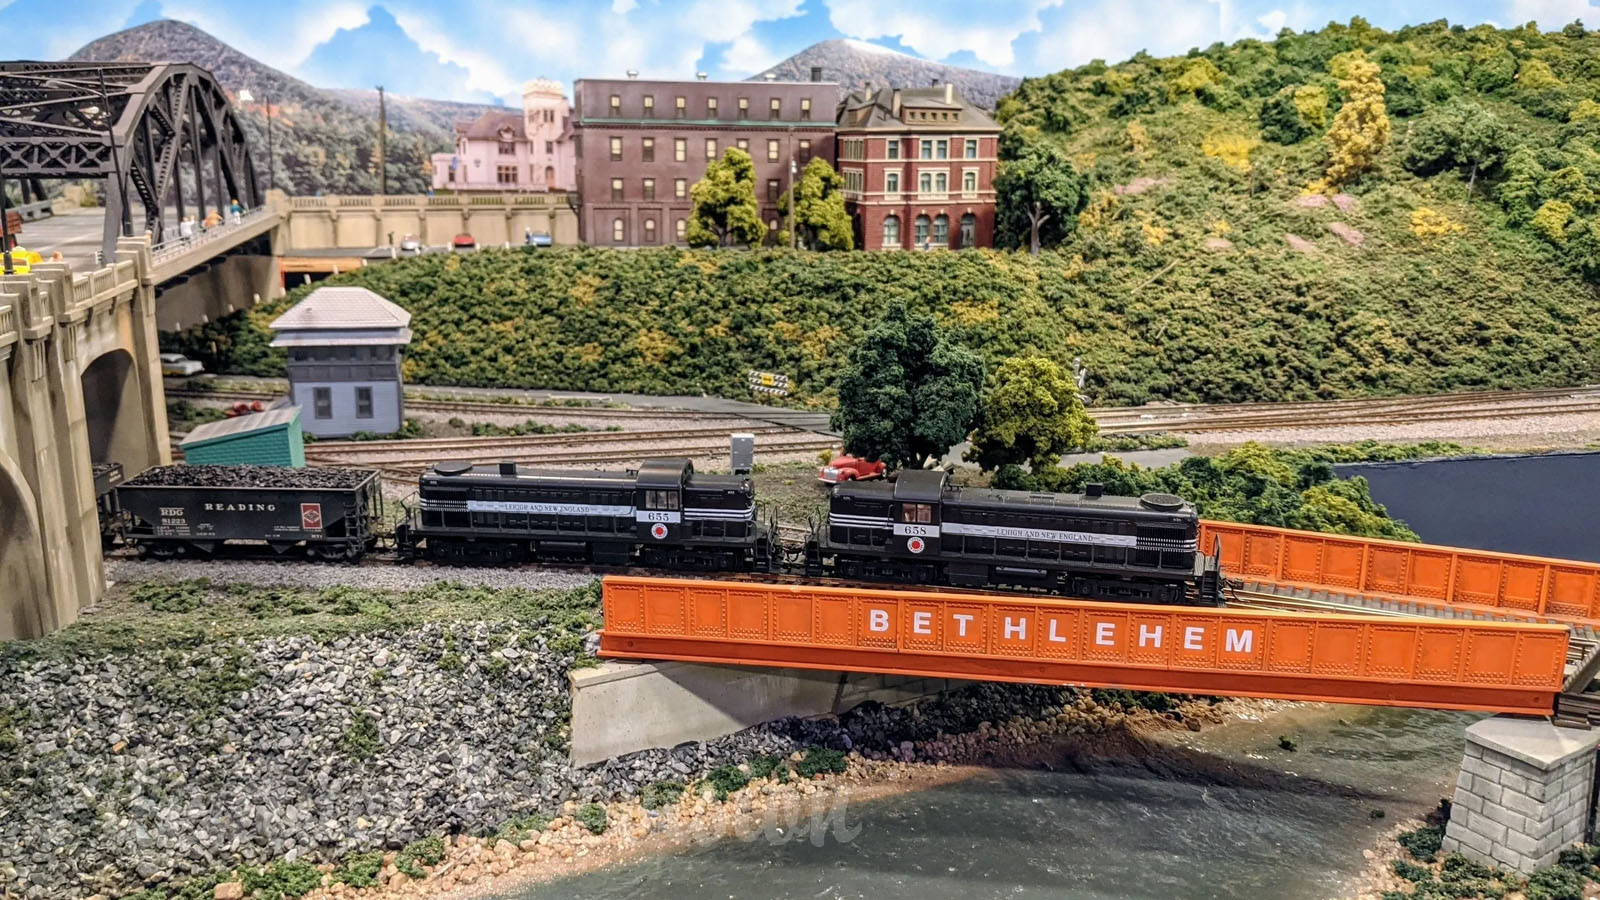 Uno dei più grandi plastici ferroviari degli Stati Uniti: Il museo del modellismo ferroviario Lehigh & Keystone Valley